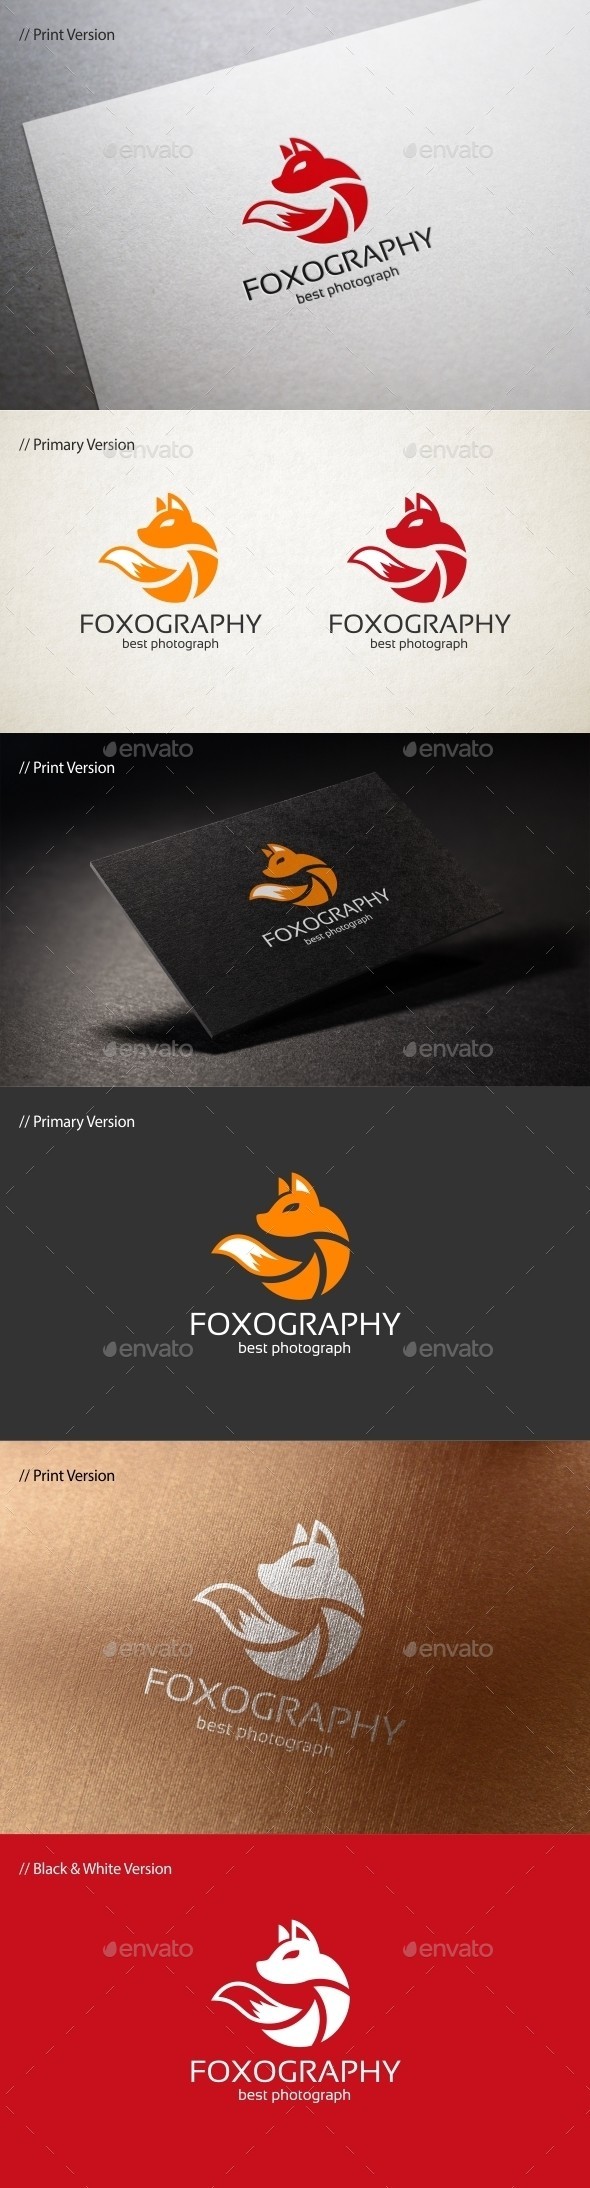 Foxography 20logo 20template 20590